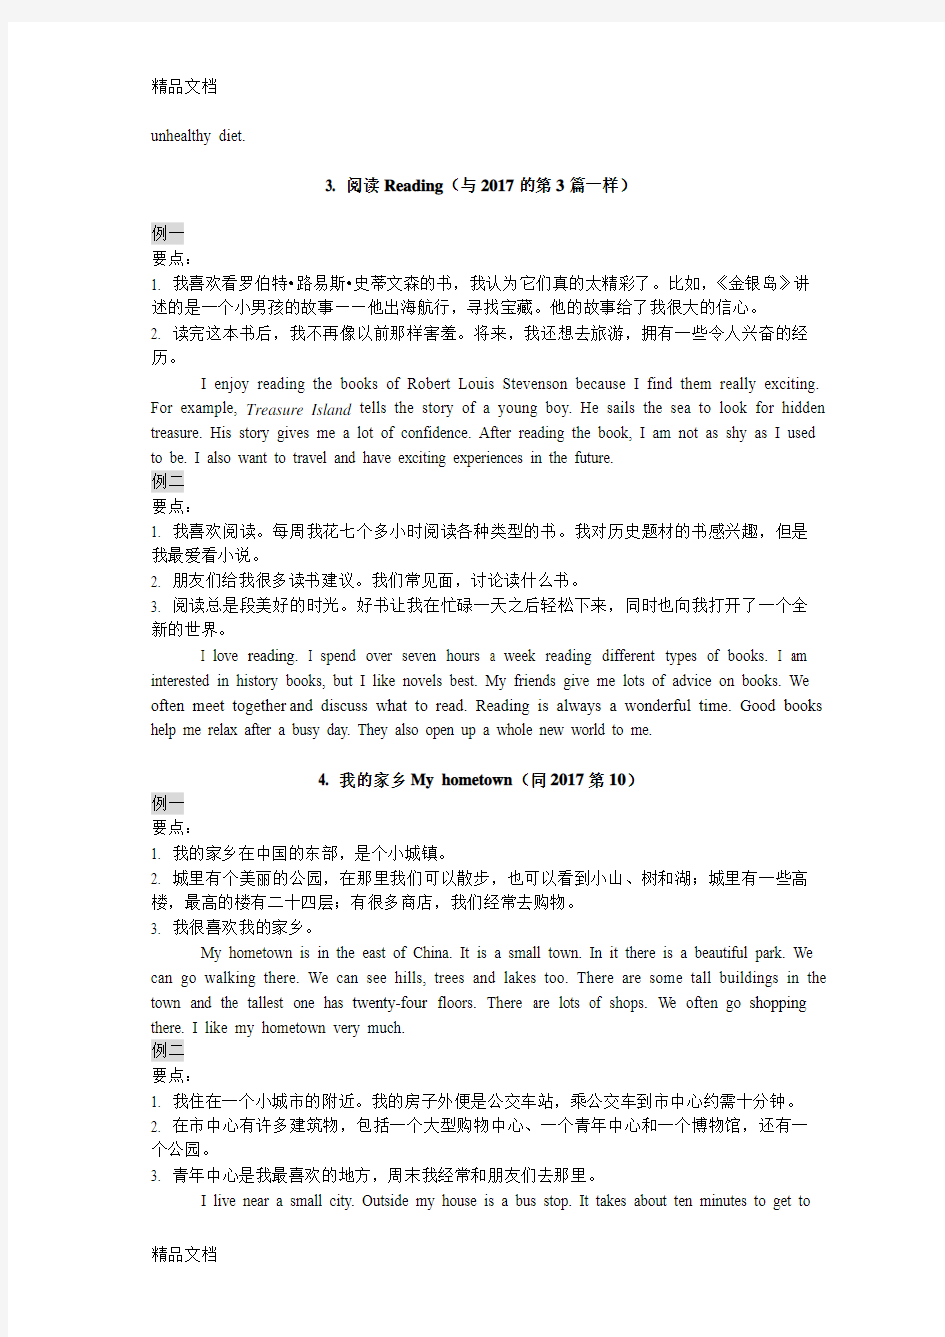 最新江苏省人机对话考试口语训练材料(话题简述)资料